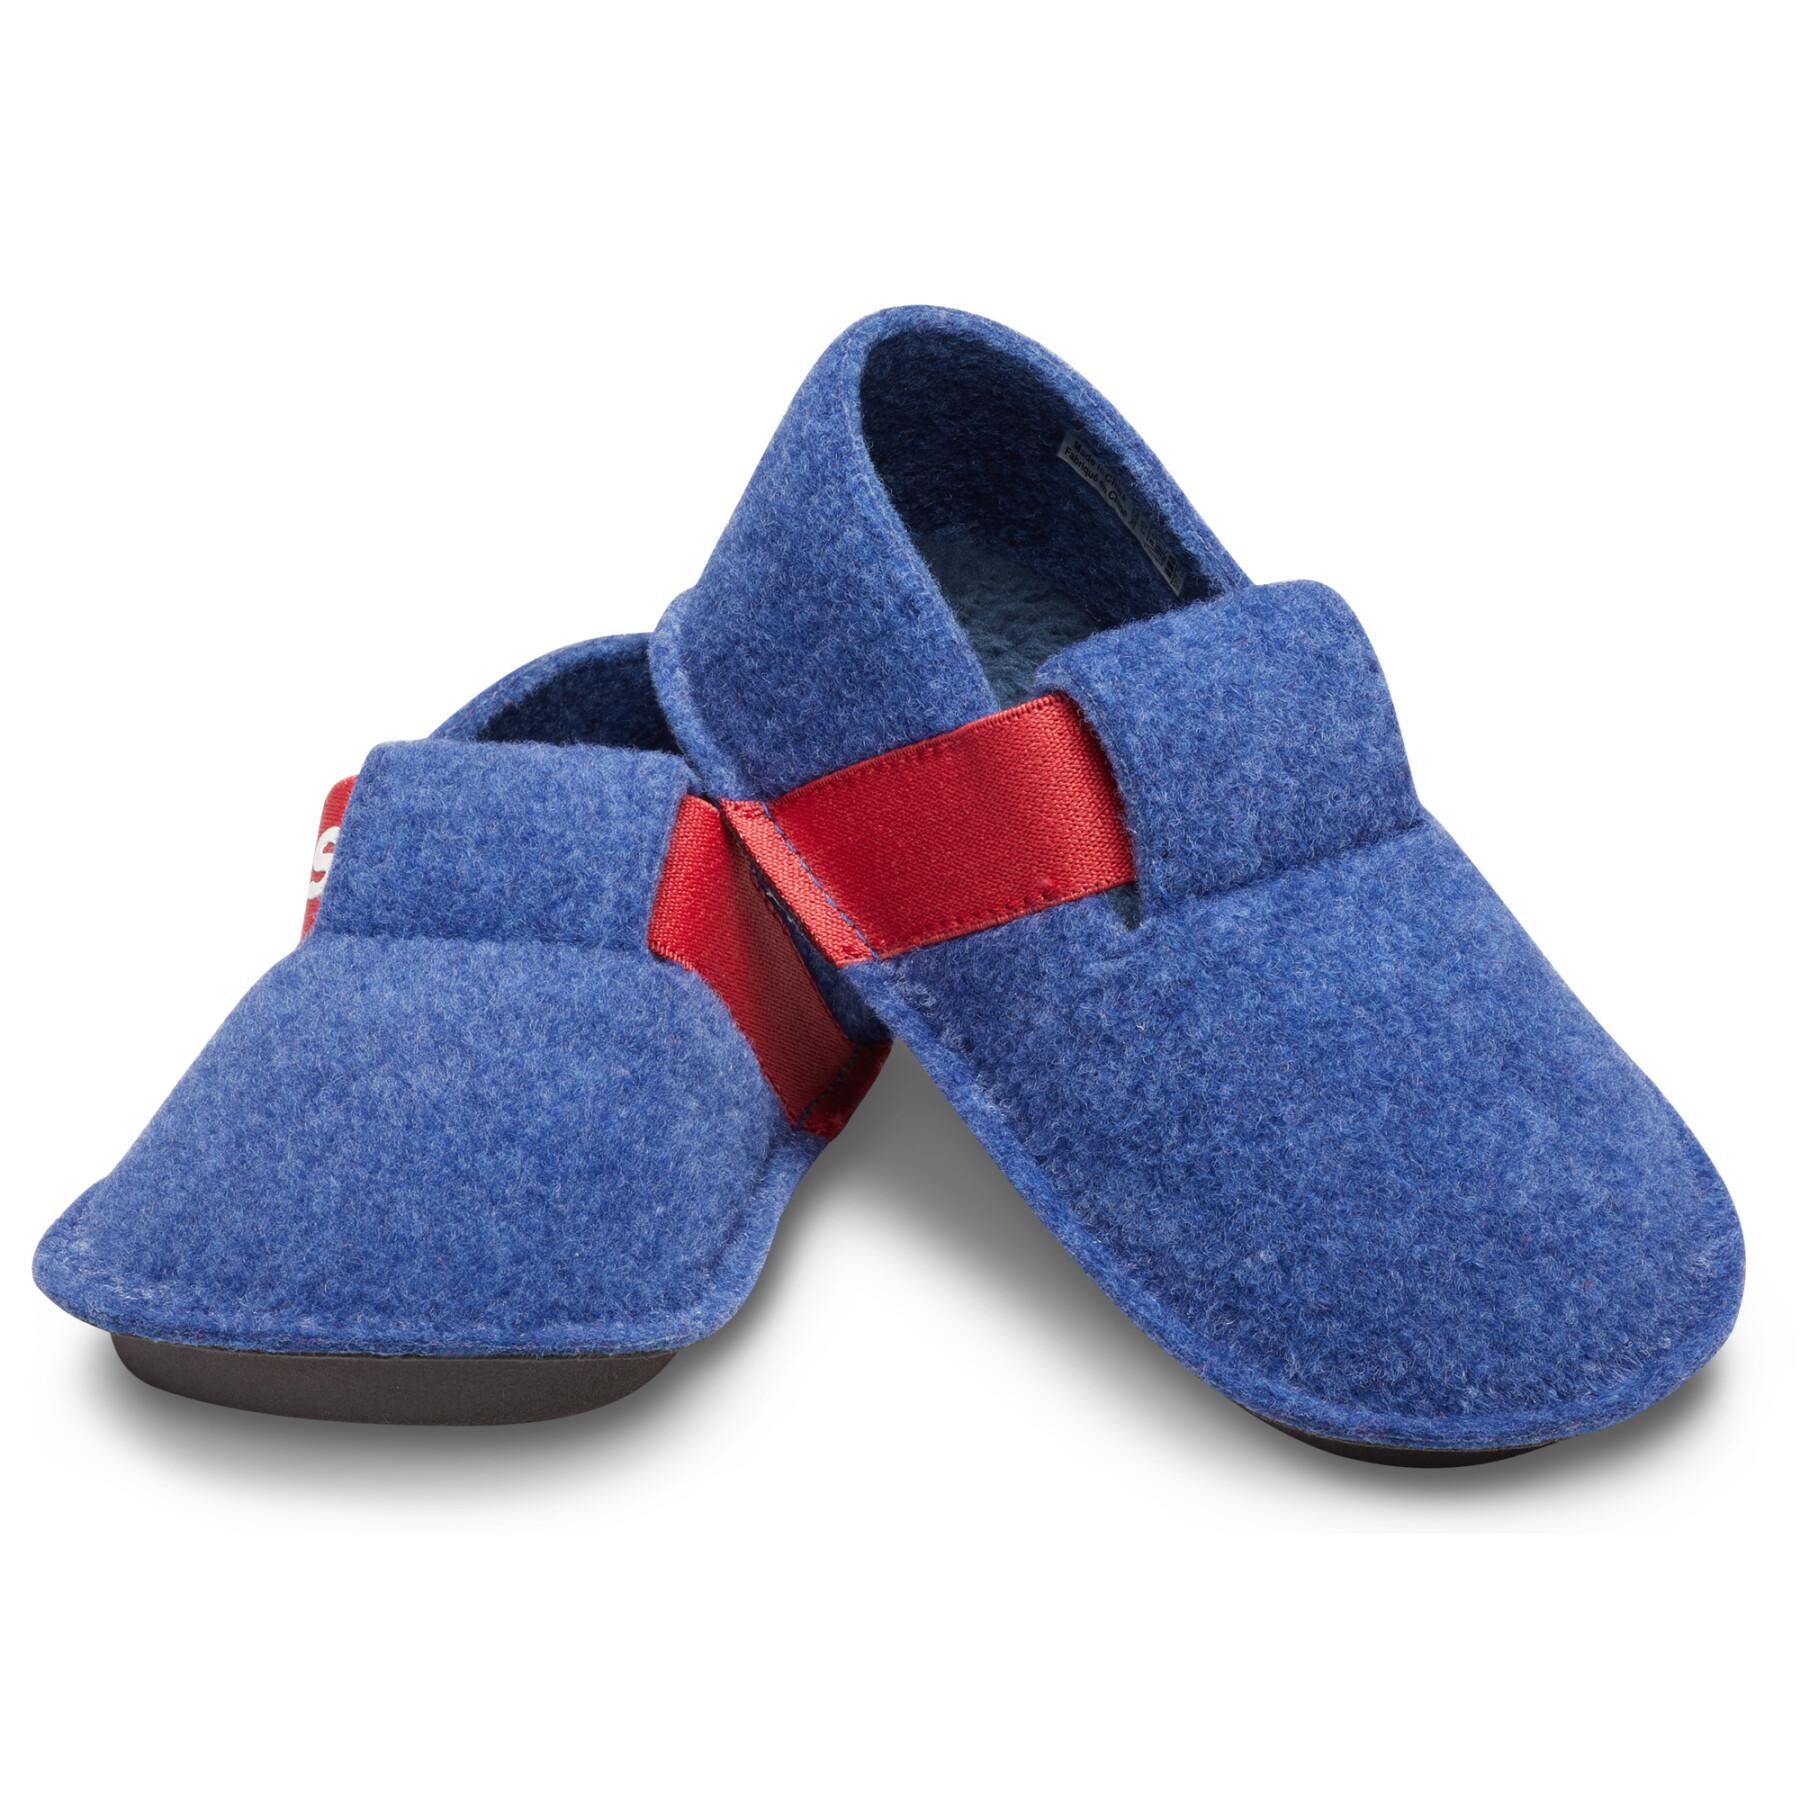 Pantoufles enfant Crocs classic slipper